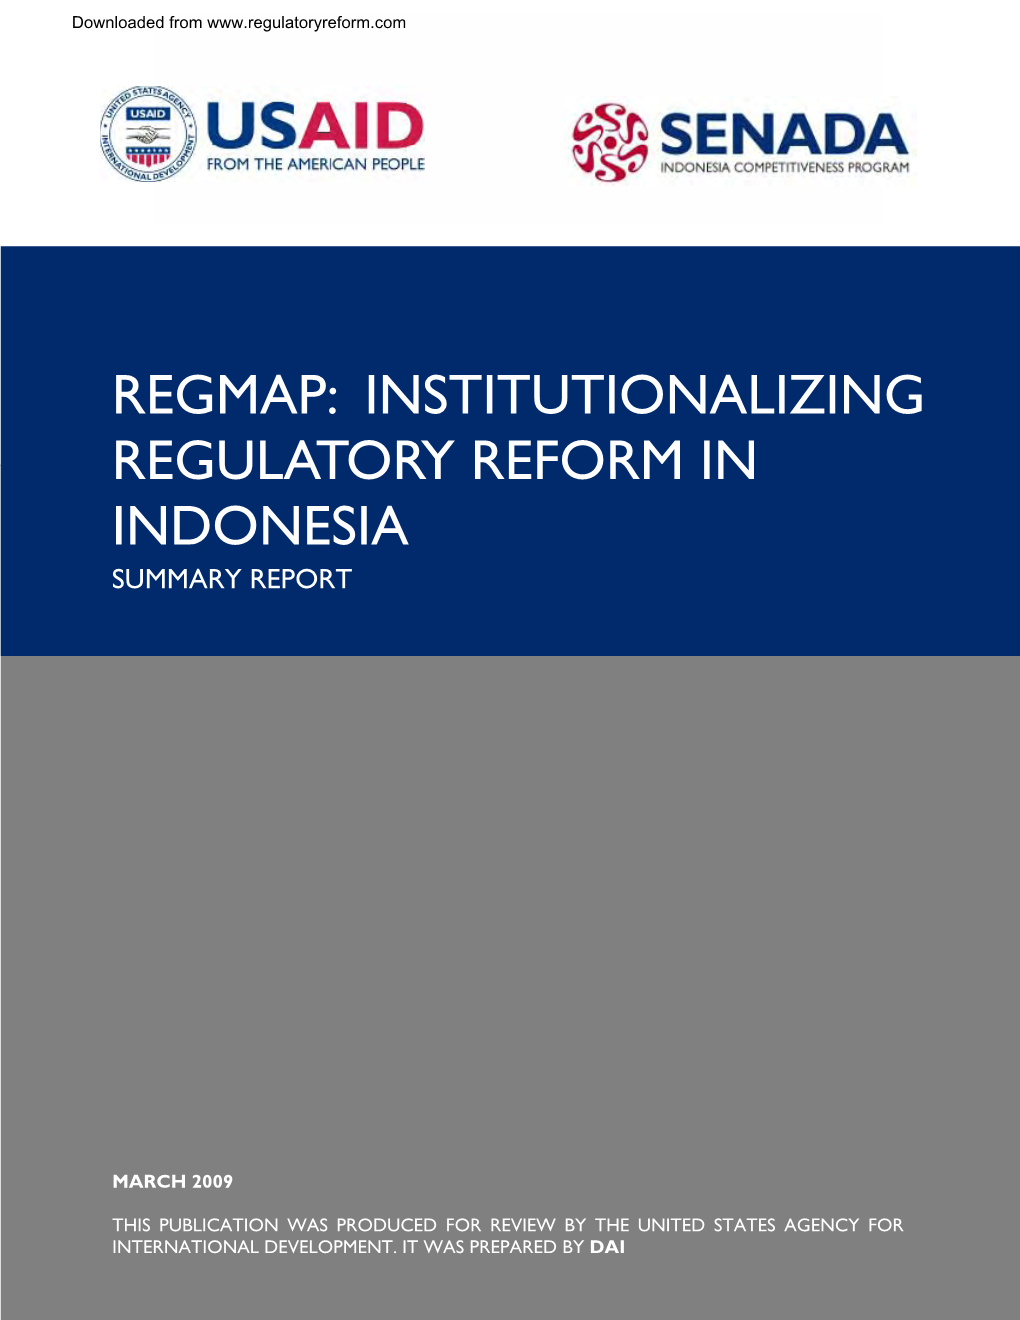 Regmap: Institutionalizing Regulatory Reform in Indonesia Summary Report